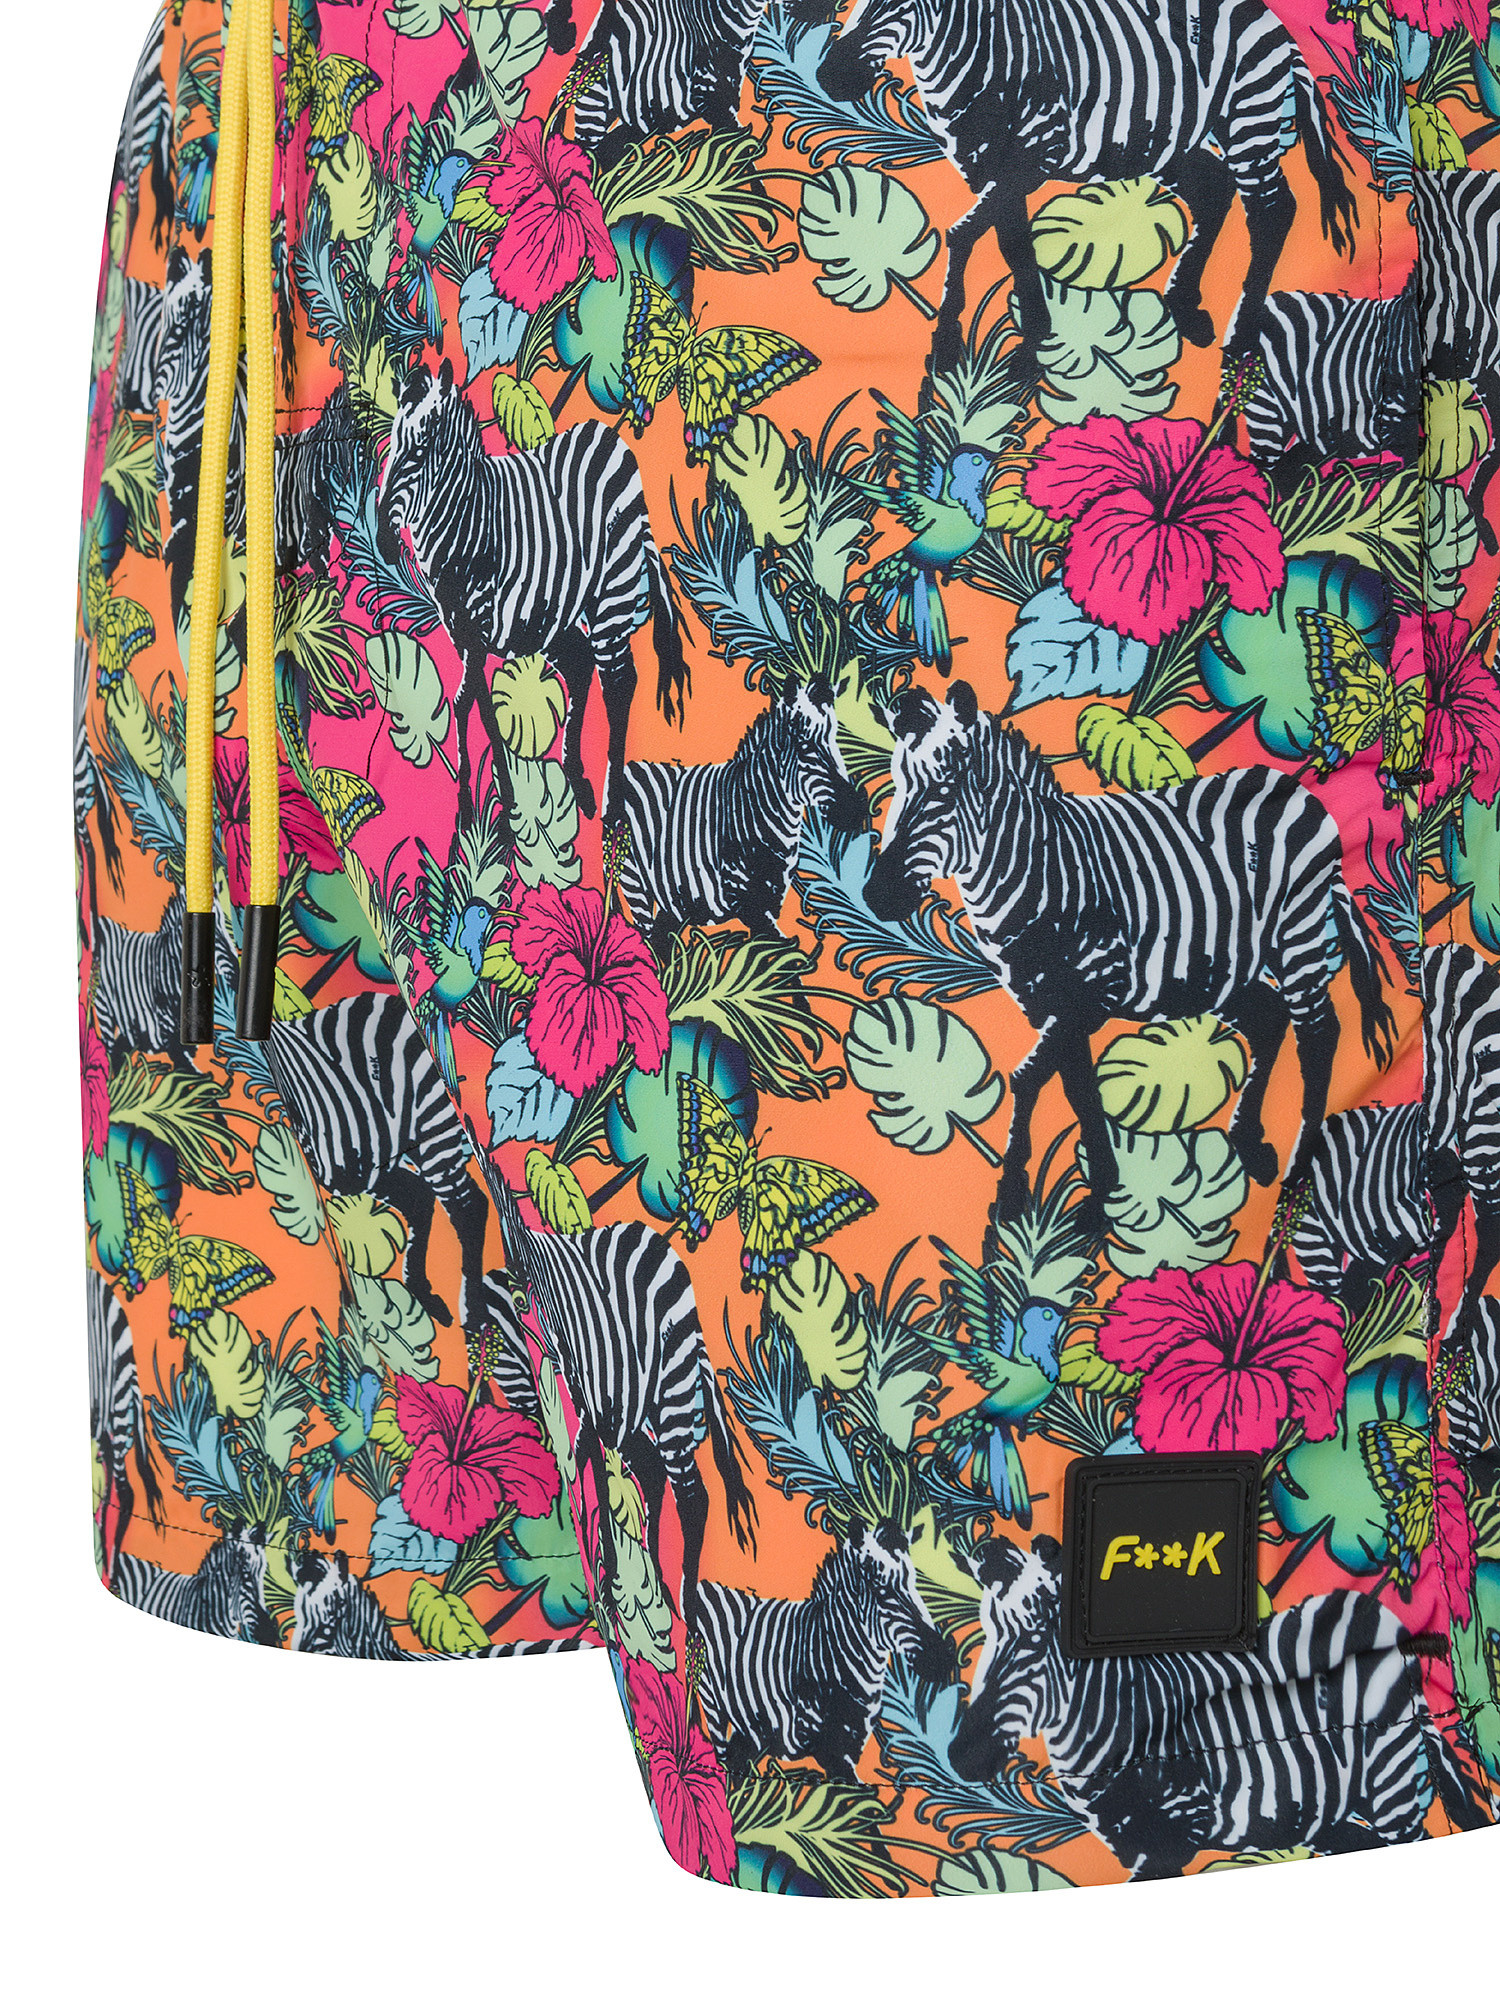 F**K - Patterned swim shorts, Multicolor, large image number 2